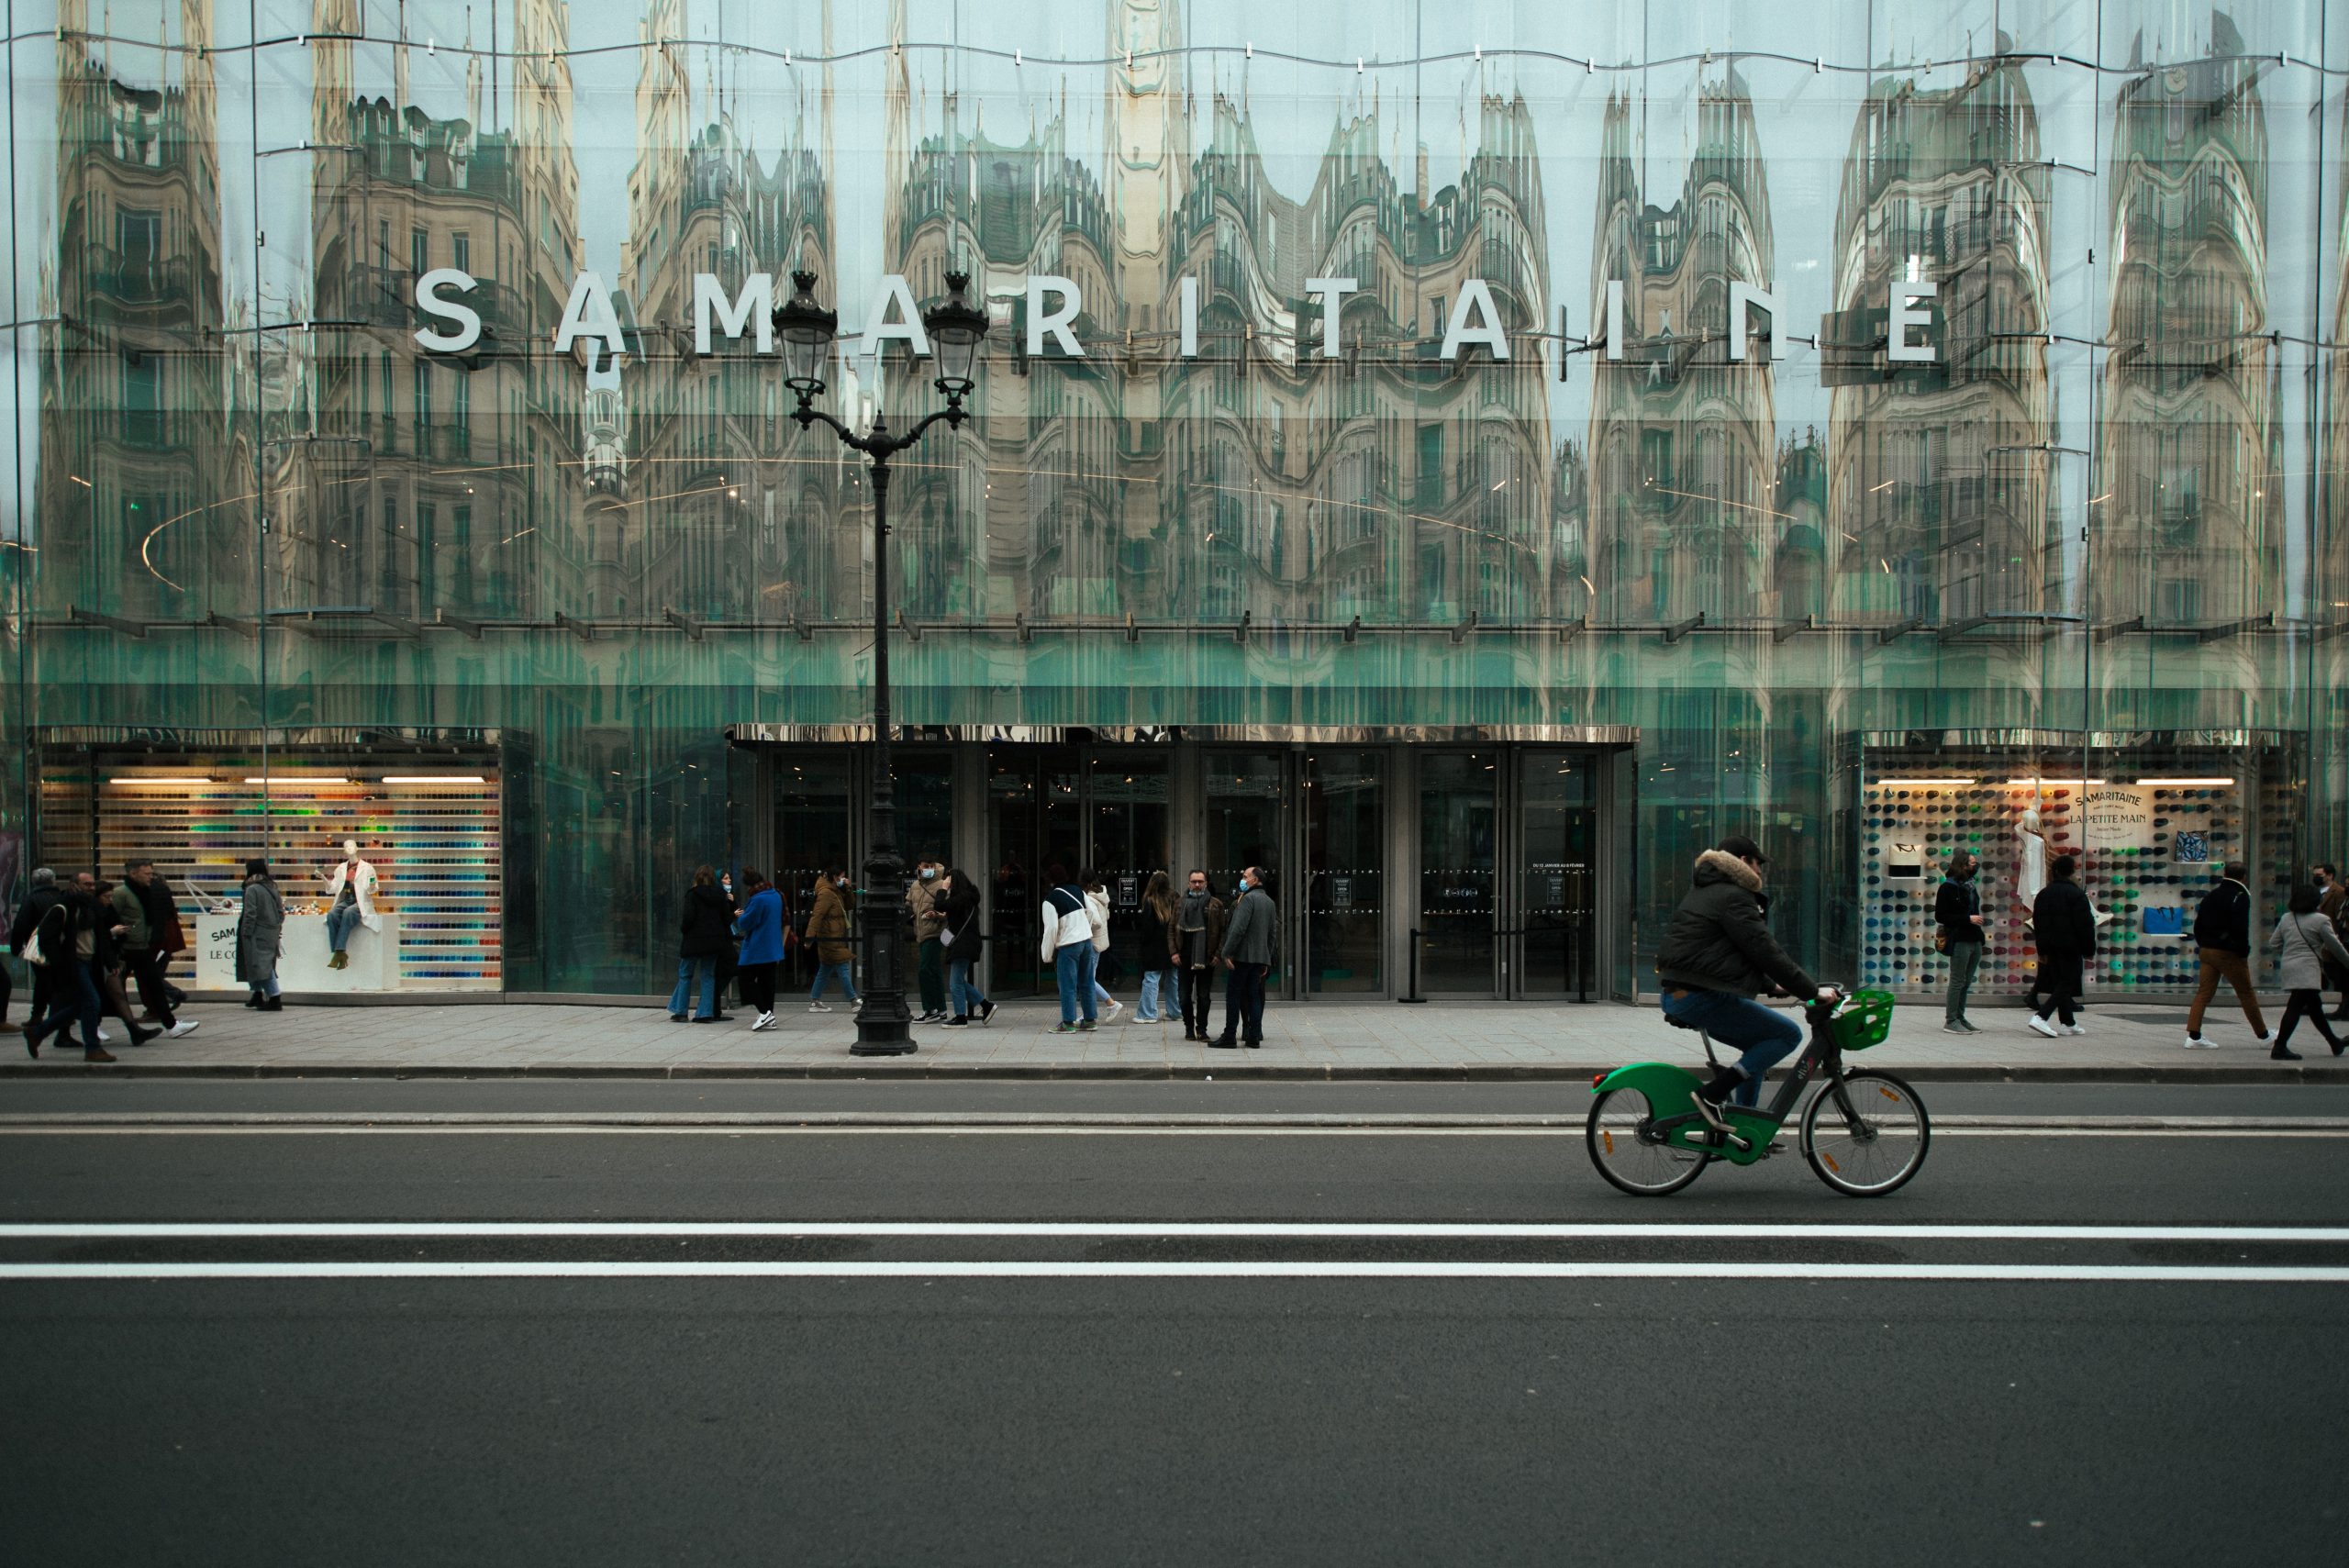 Samaritaine, Parisian Department Store